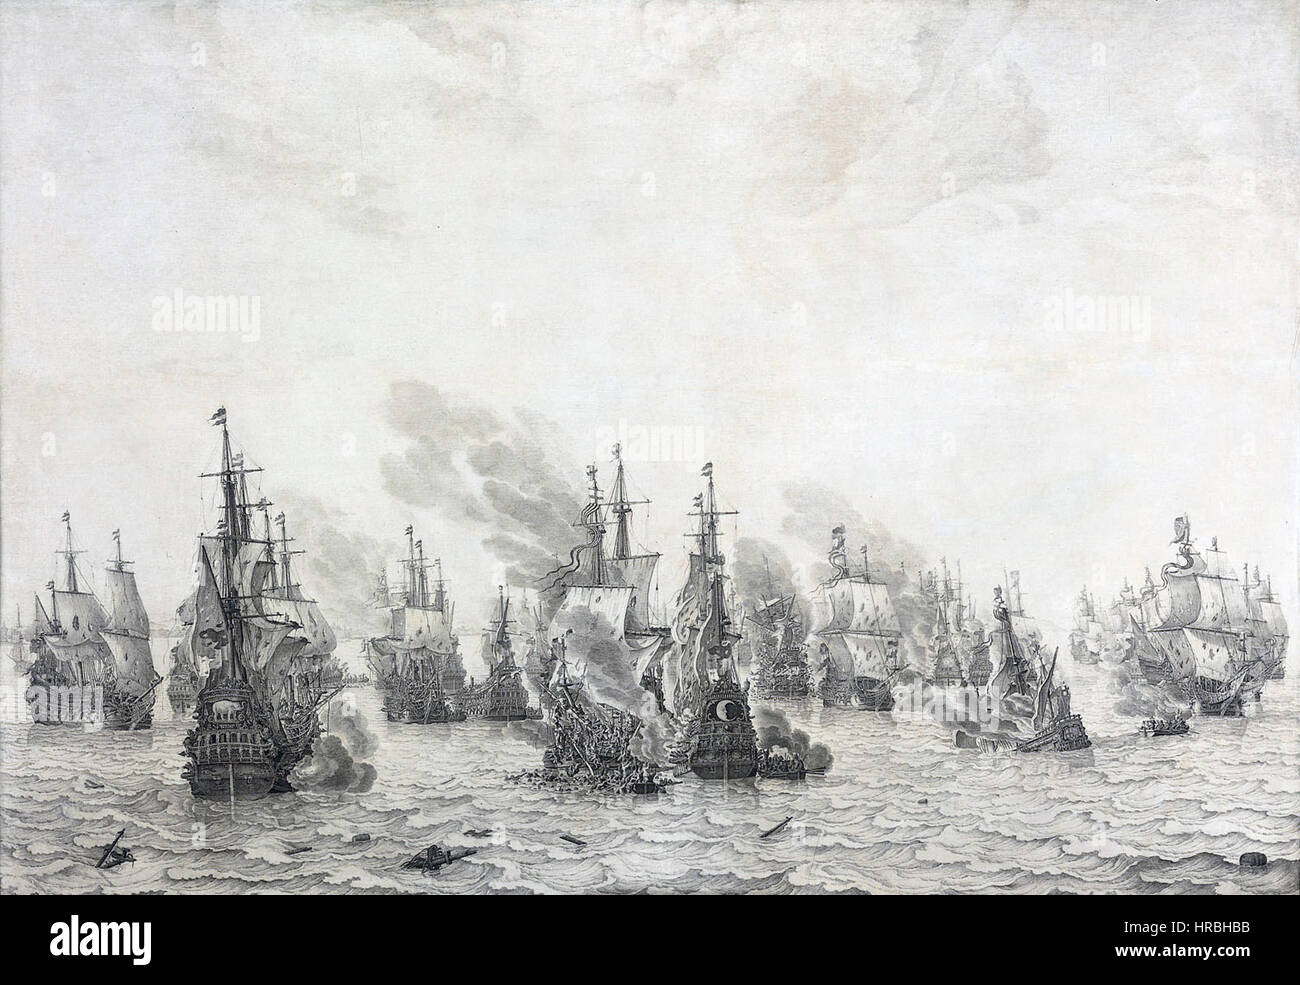 Slag bij Livorno - Battle of Leghorn (Willem van de Velde I) Stock Photo